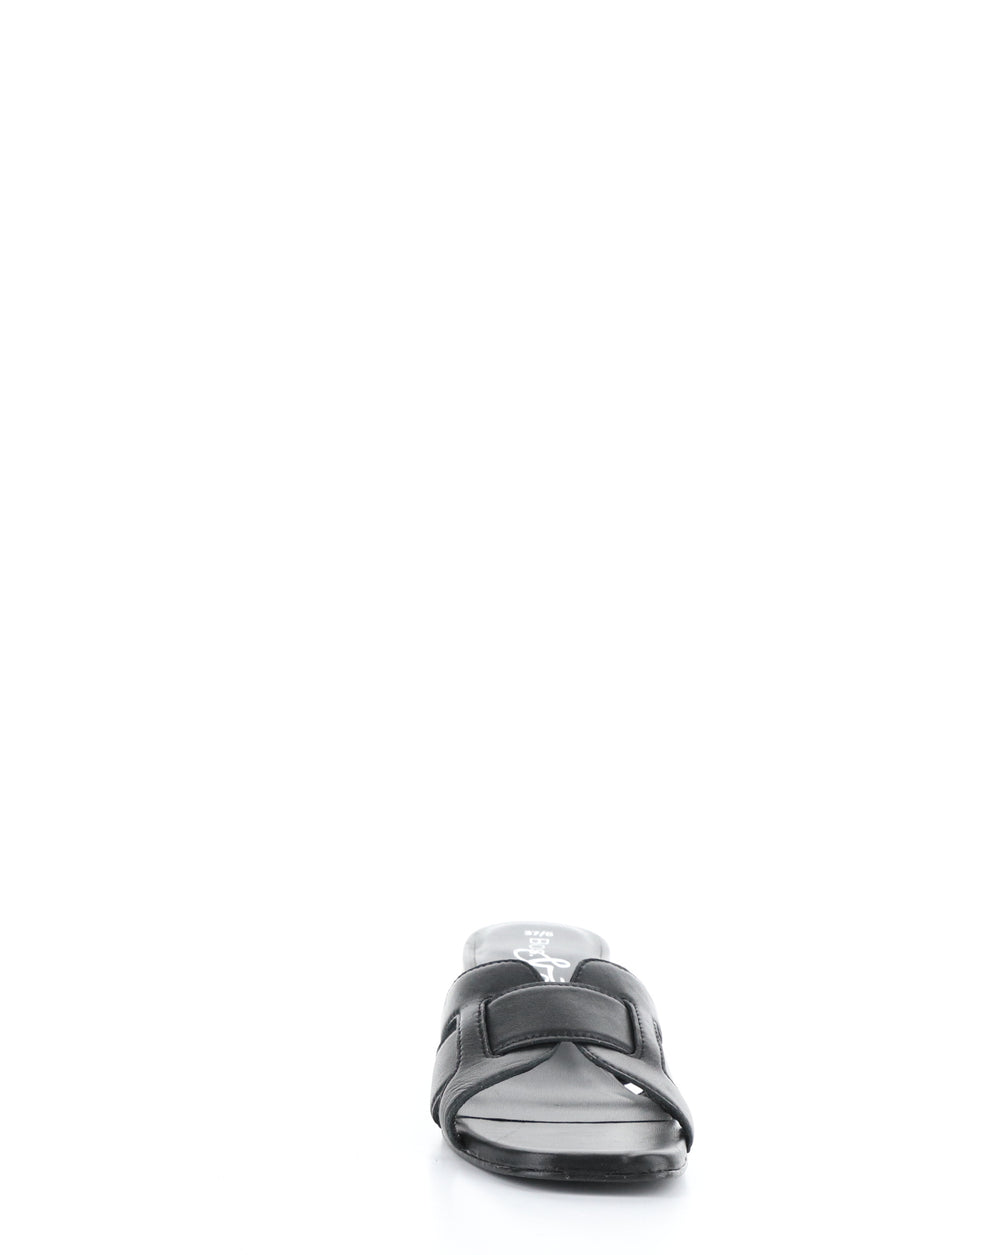 UPLIFT BLACK Slip-on Sandals